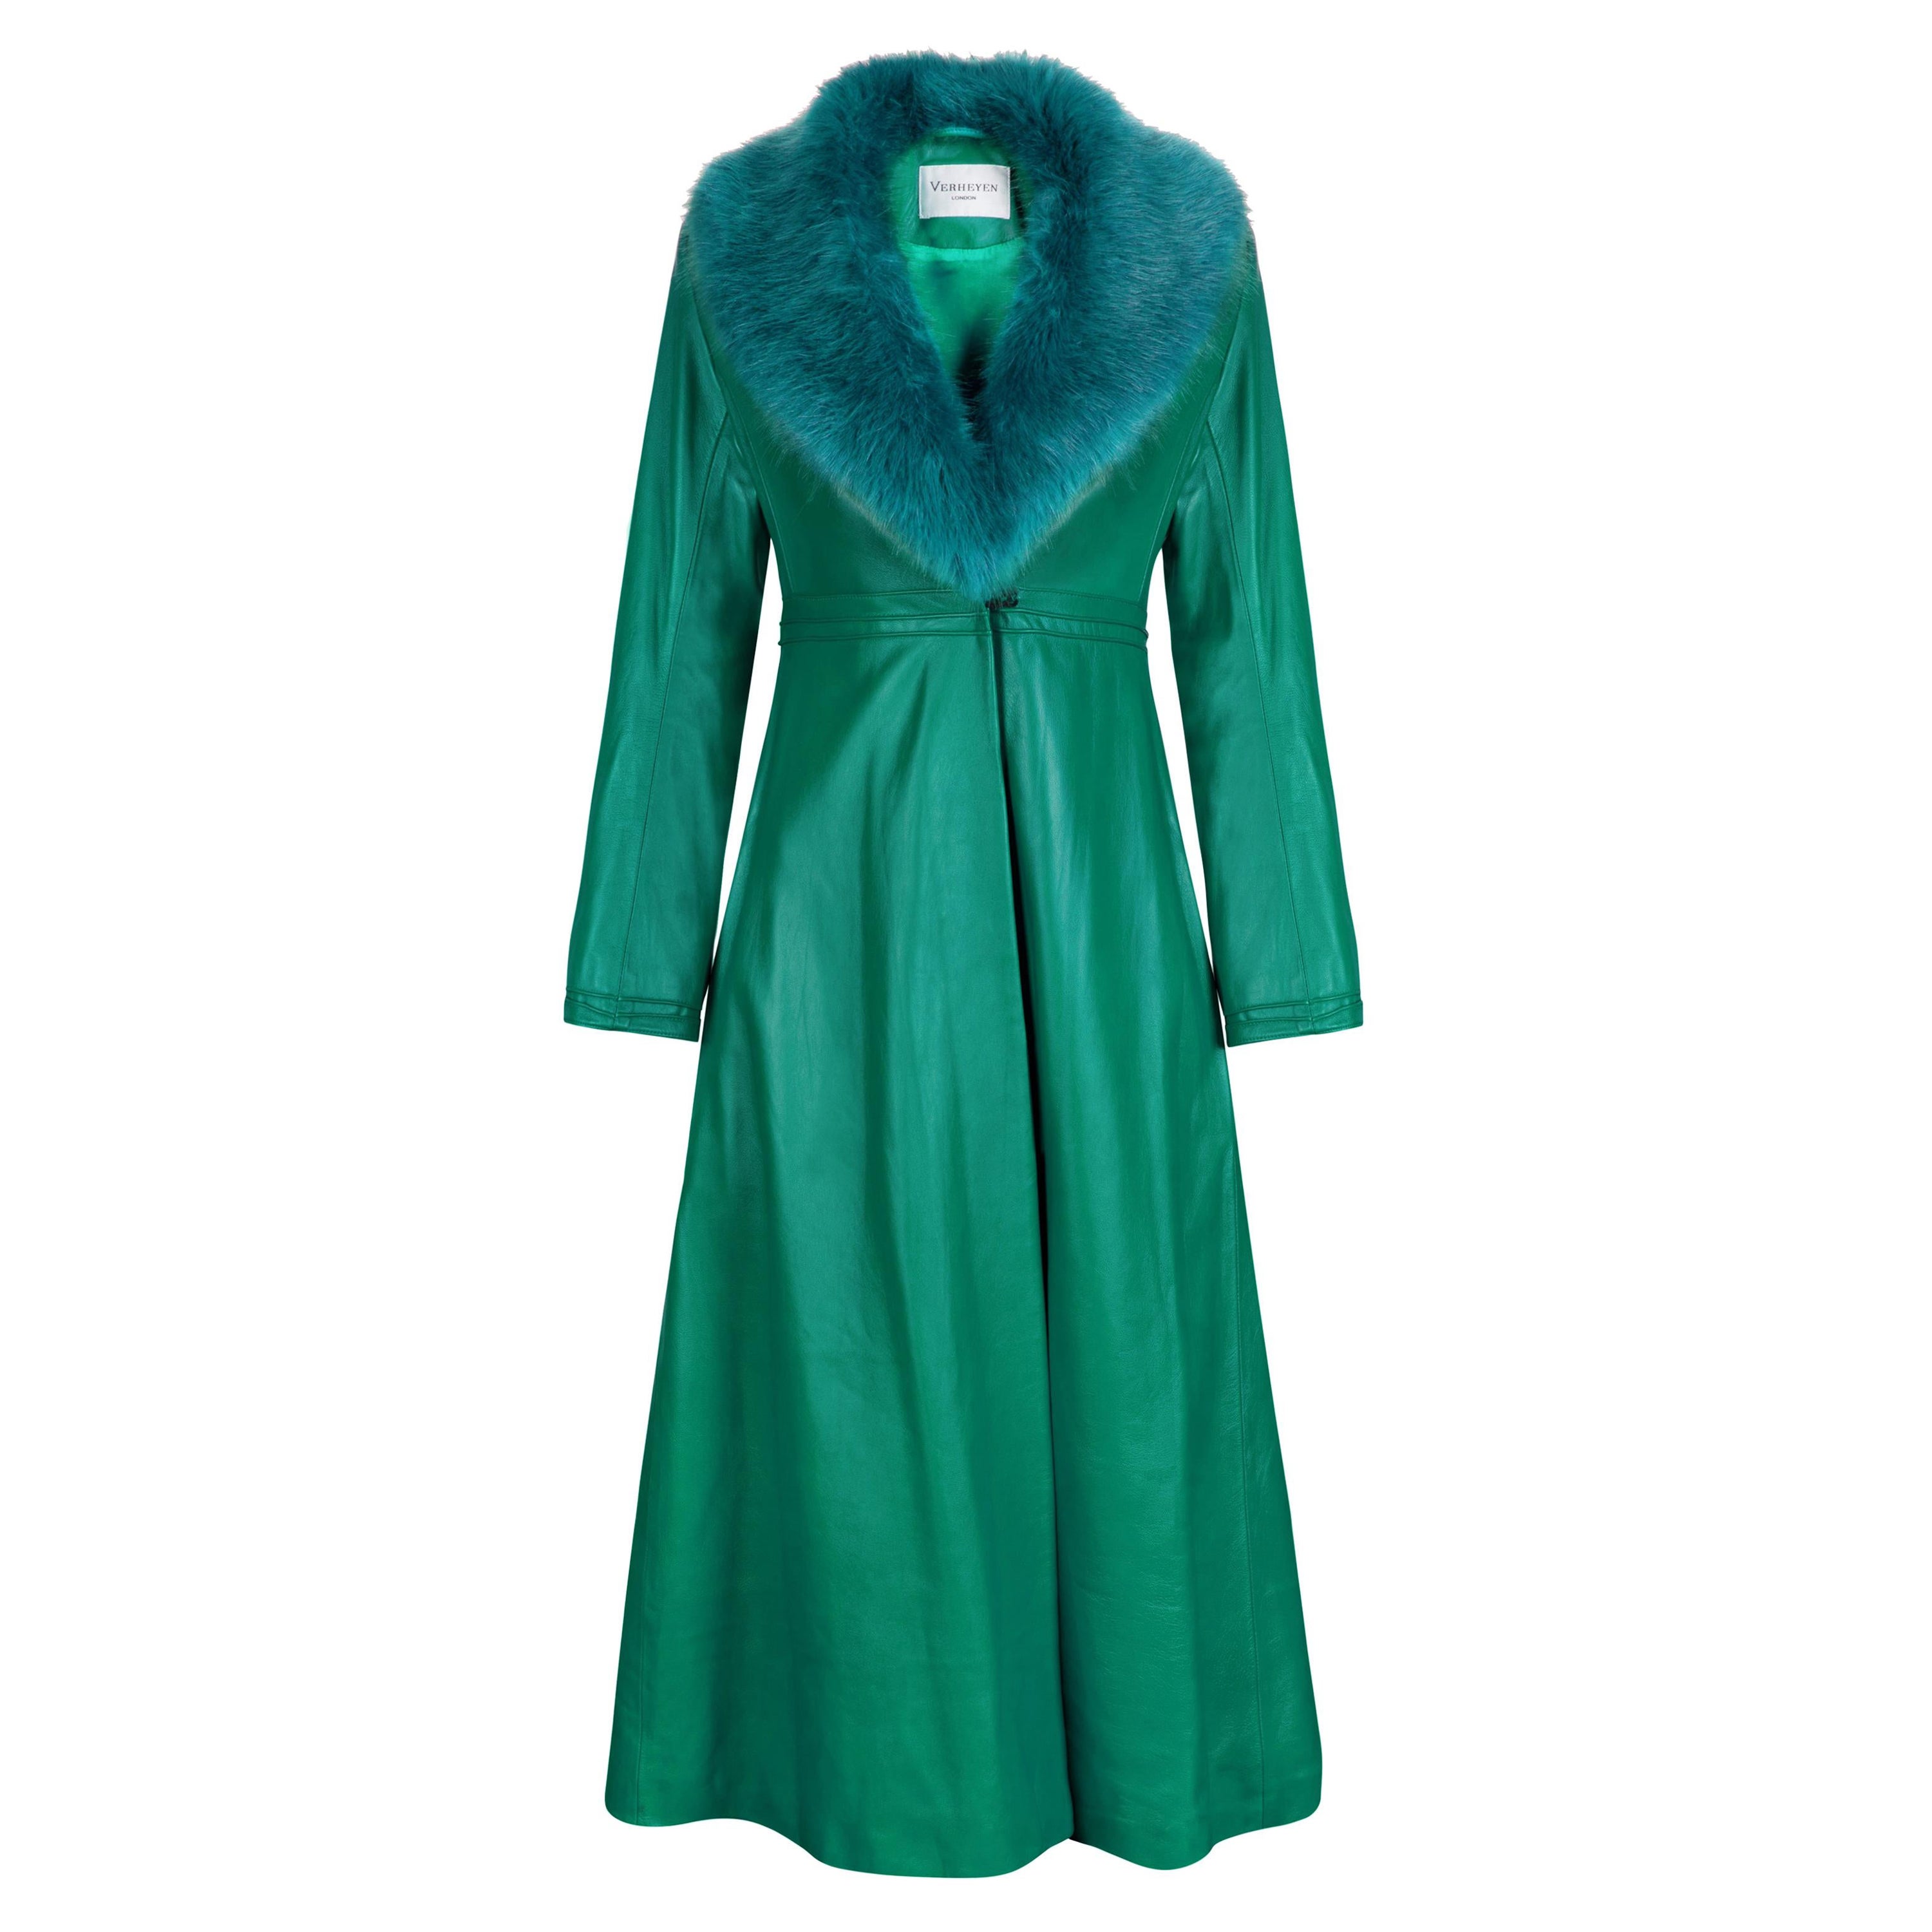 Verheyen London Edward Leather Coat in Green & Green Faux Fur - Size 14 UK  For Sale